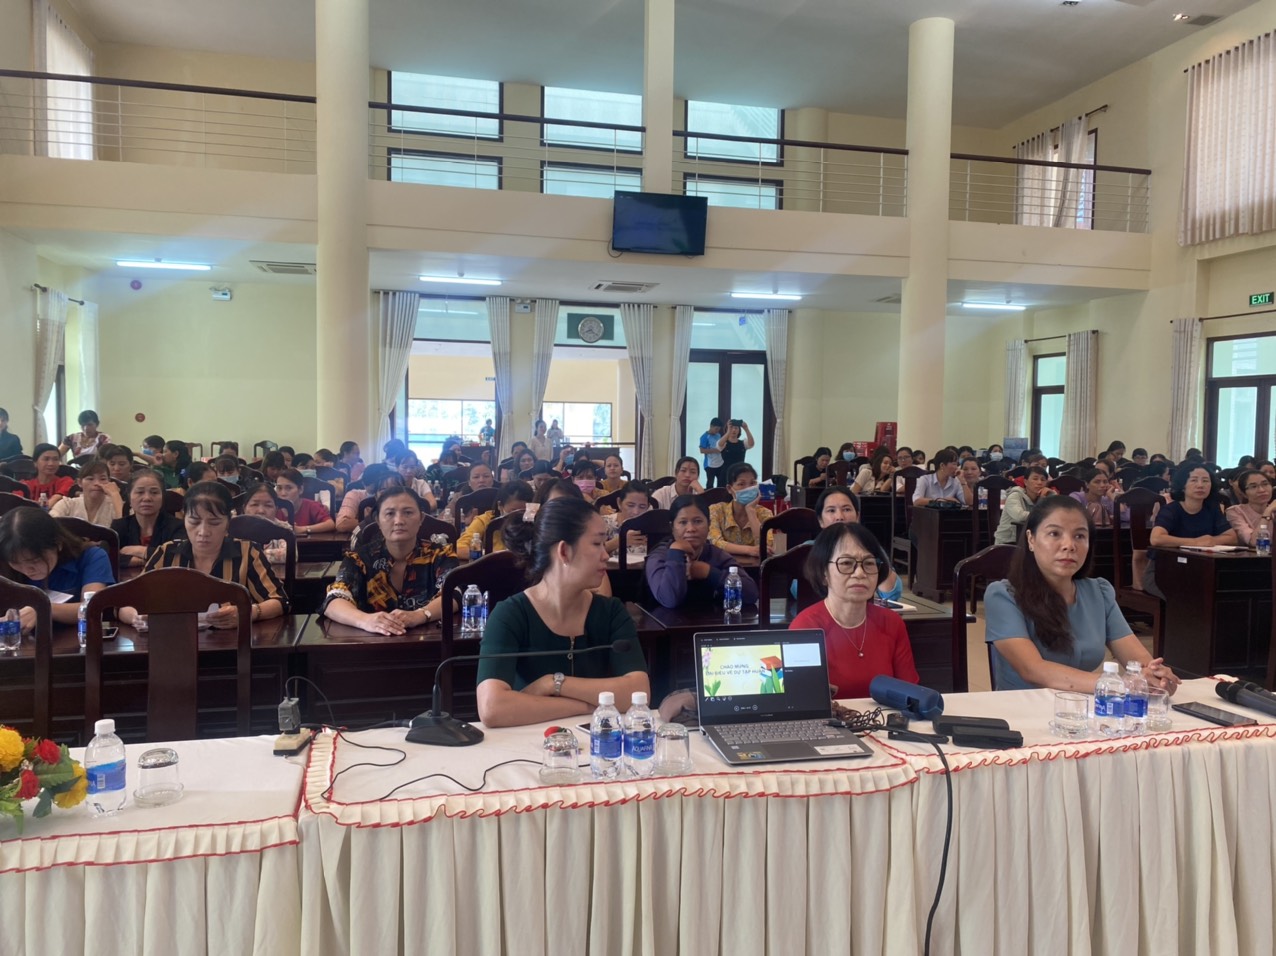 Hớn Quản, Chơn Thành 309 Nữ ứng cử tham gia lớp tập huấn Đại biểu hội đồng nhân dân cấp xã, nhiệm kỳ 2021 – 2026